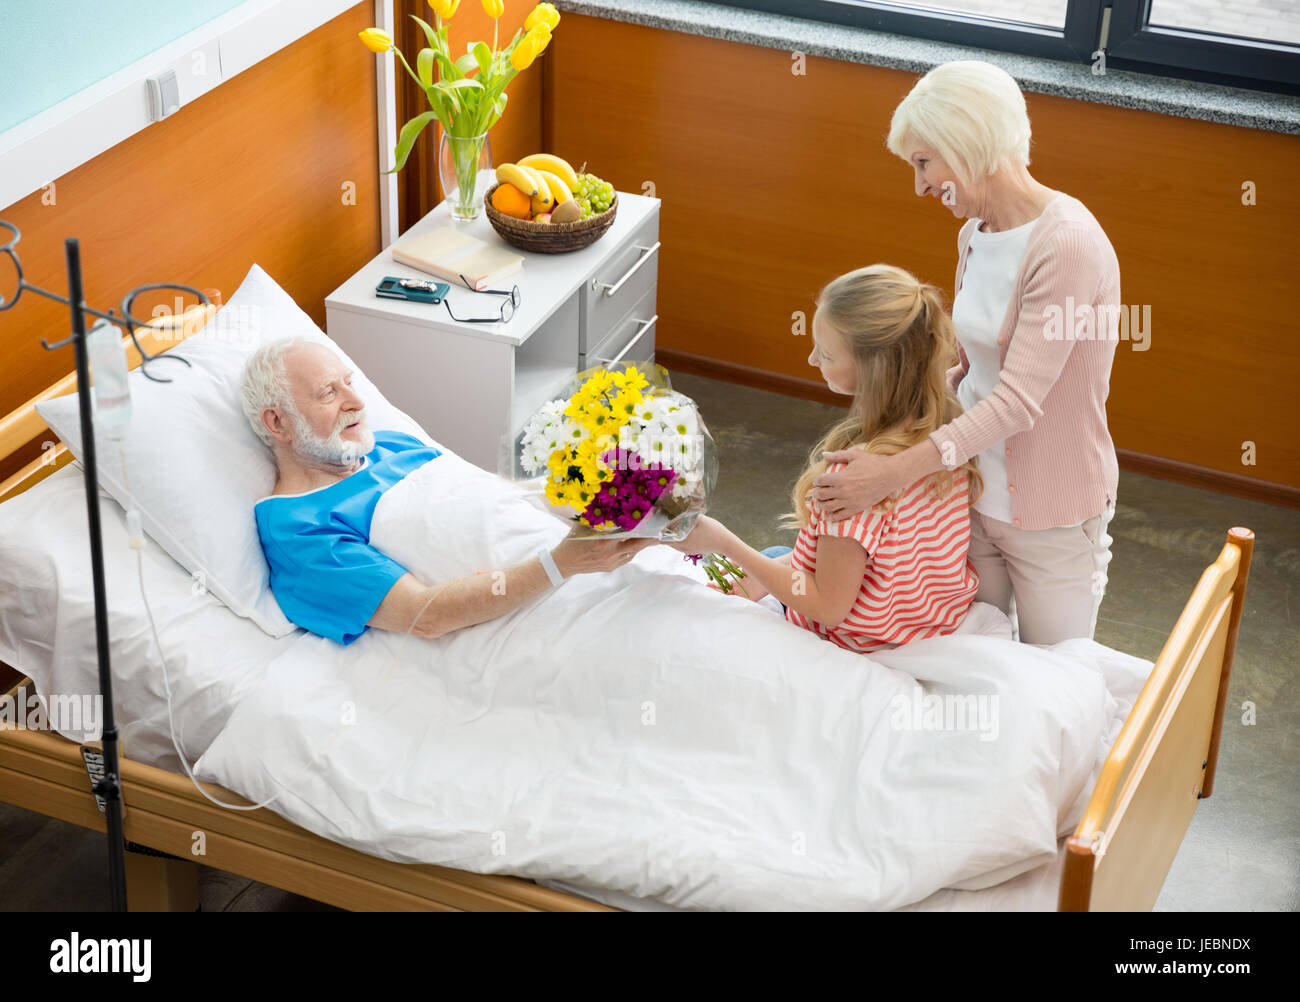 Ребенка навещаю в больнице. Навещать больного в больнице. В больнице пациента навещают. Посещение больного в больнице родственниками.